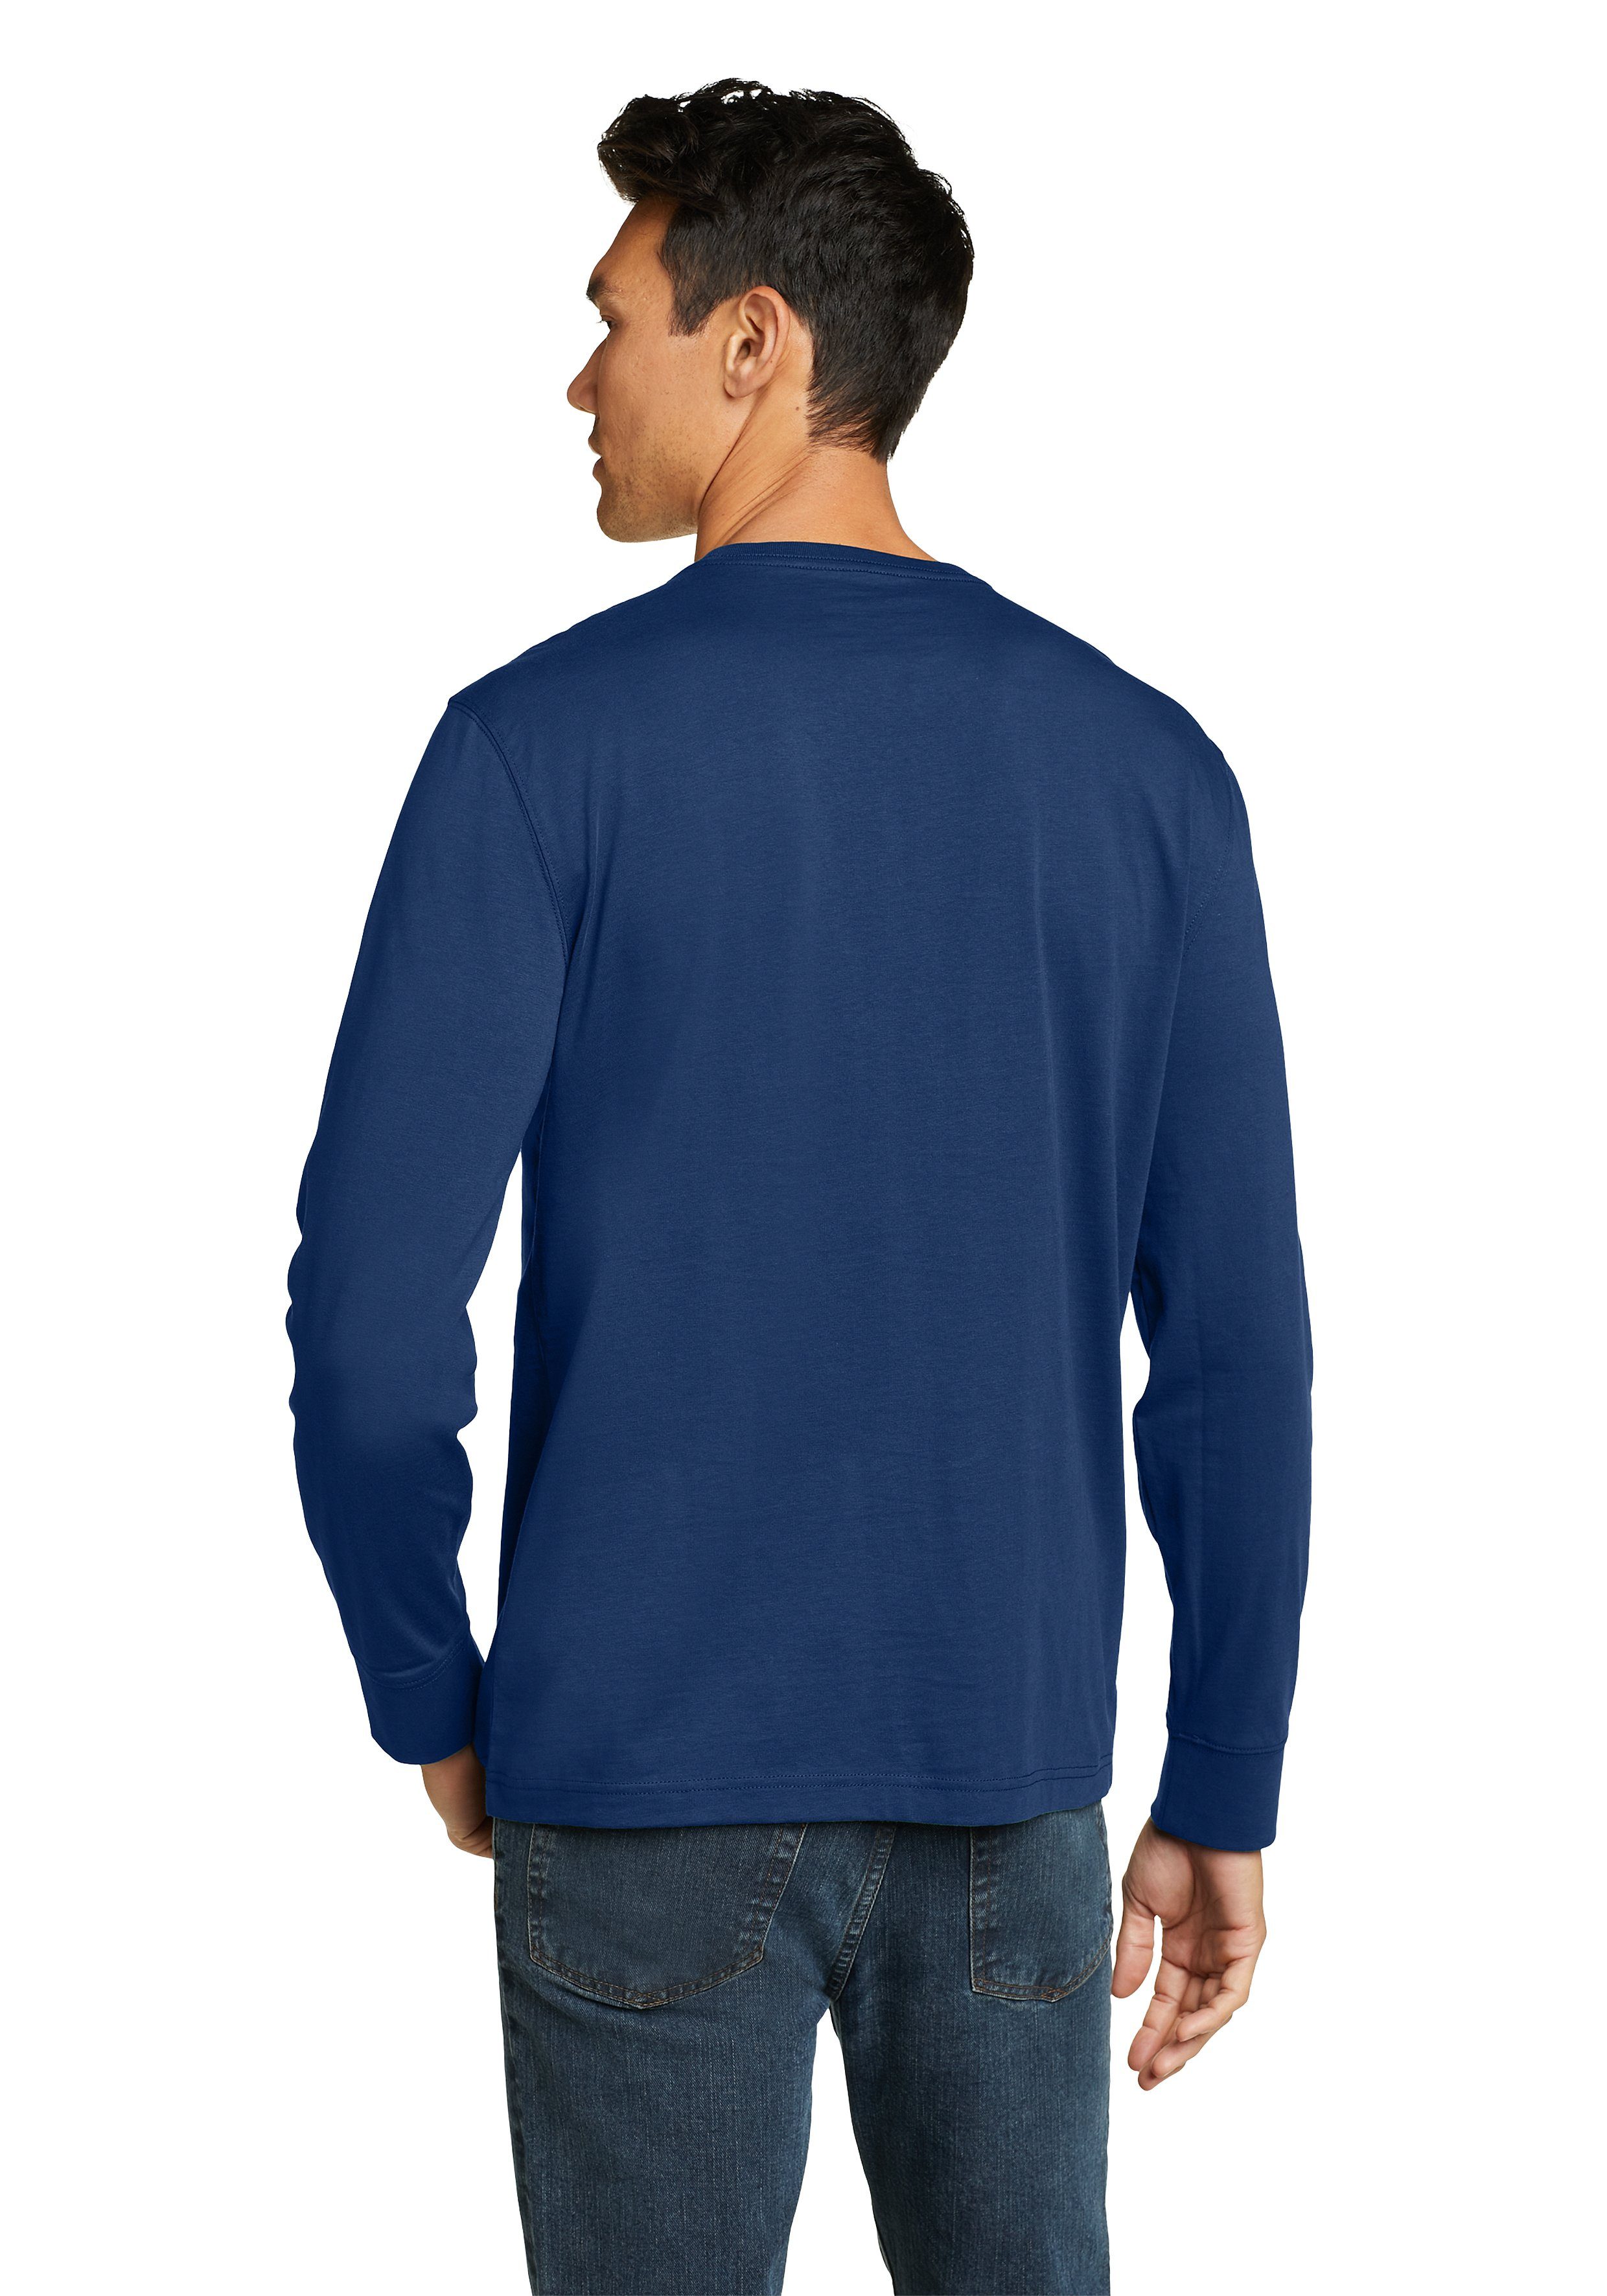 Eddie Bauer Langarmshirt Wash Legend Topasblau Tasche Baumwolle Langarm mit Pro - 100% Shirt